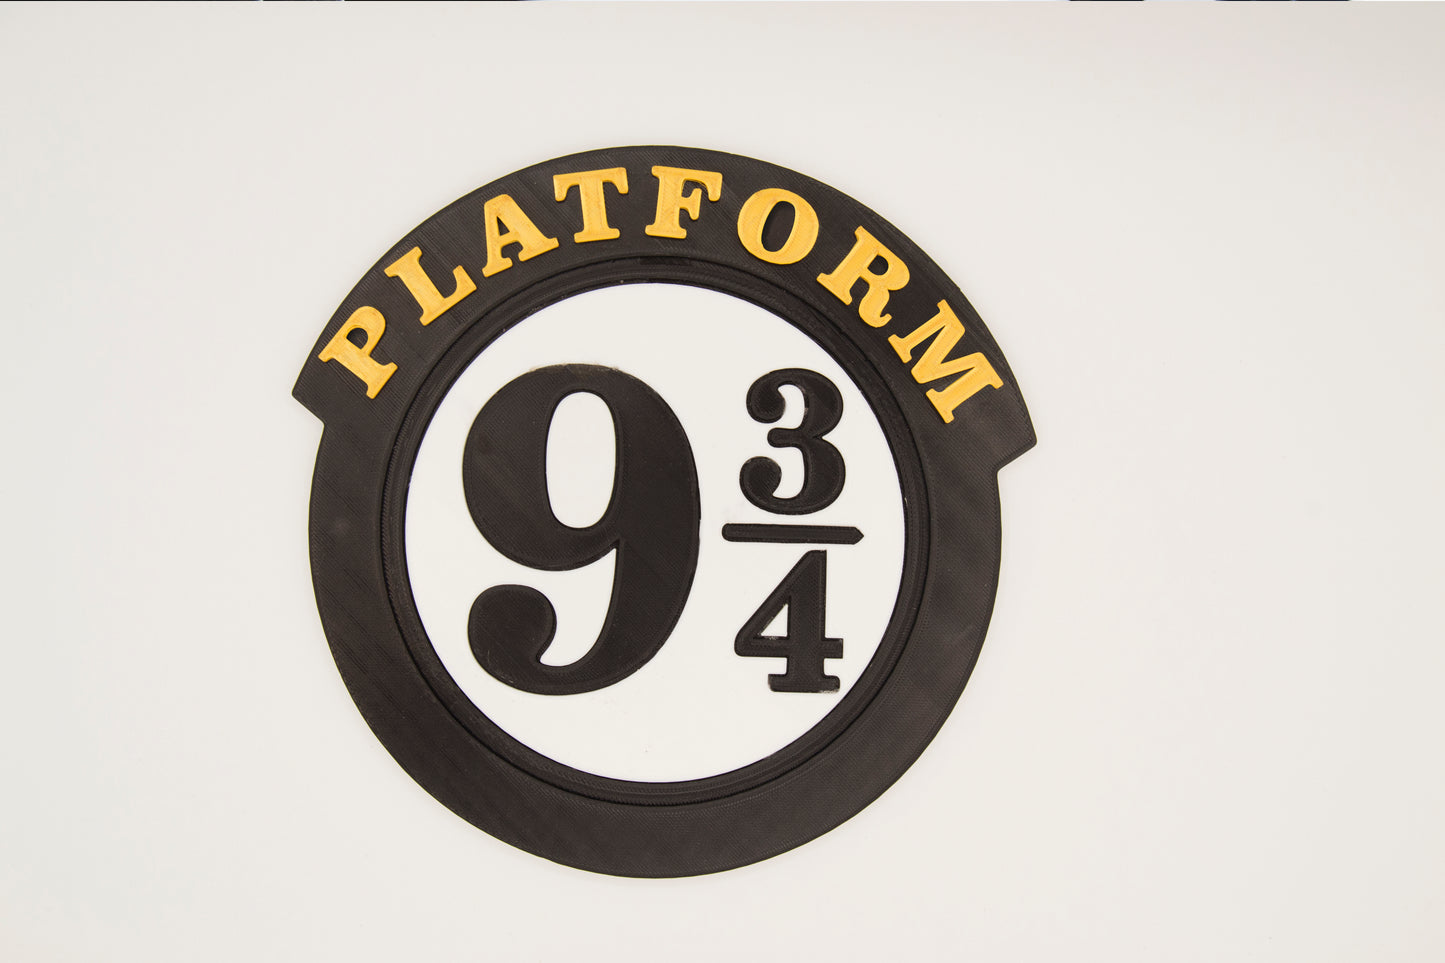 Platform 9 and 3/4 Sign